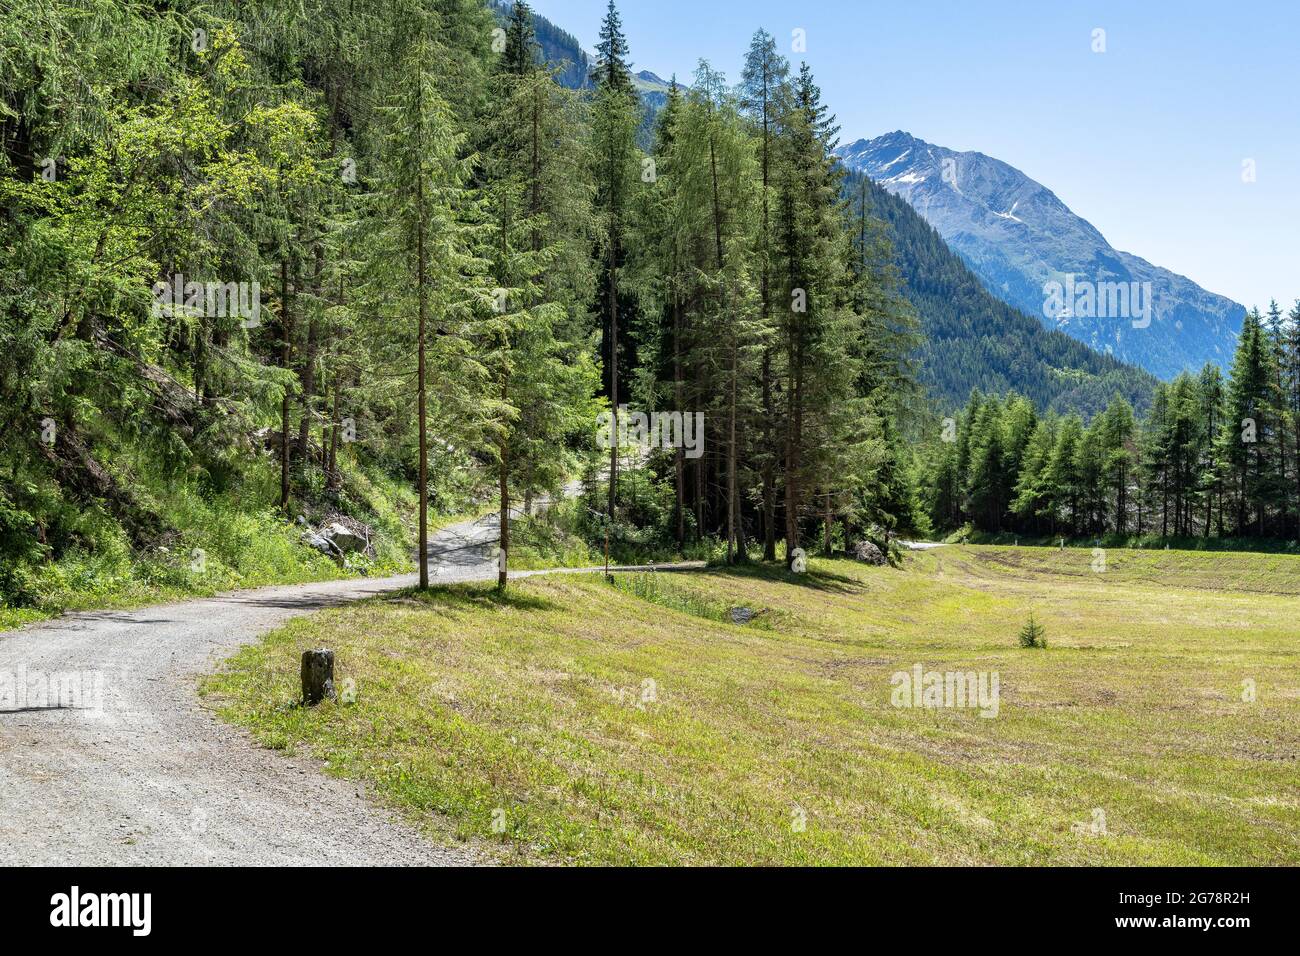 Europe, Austria, Tyrol, Ötztal Alps, Ötztal, Ötztal cycle path between Huben and Aschbach Stock Photo